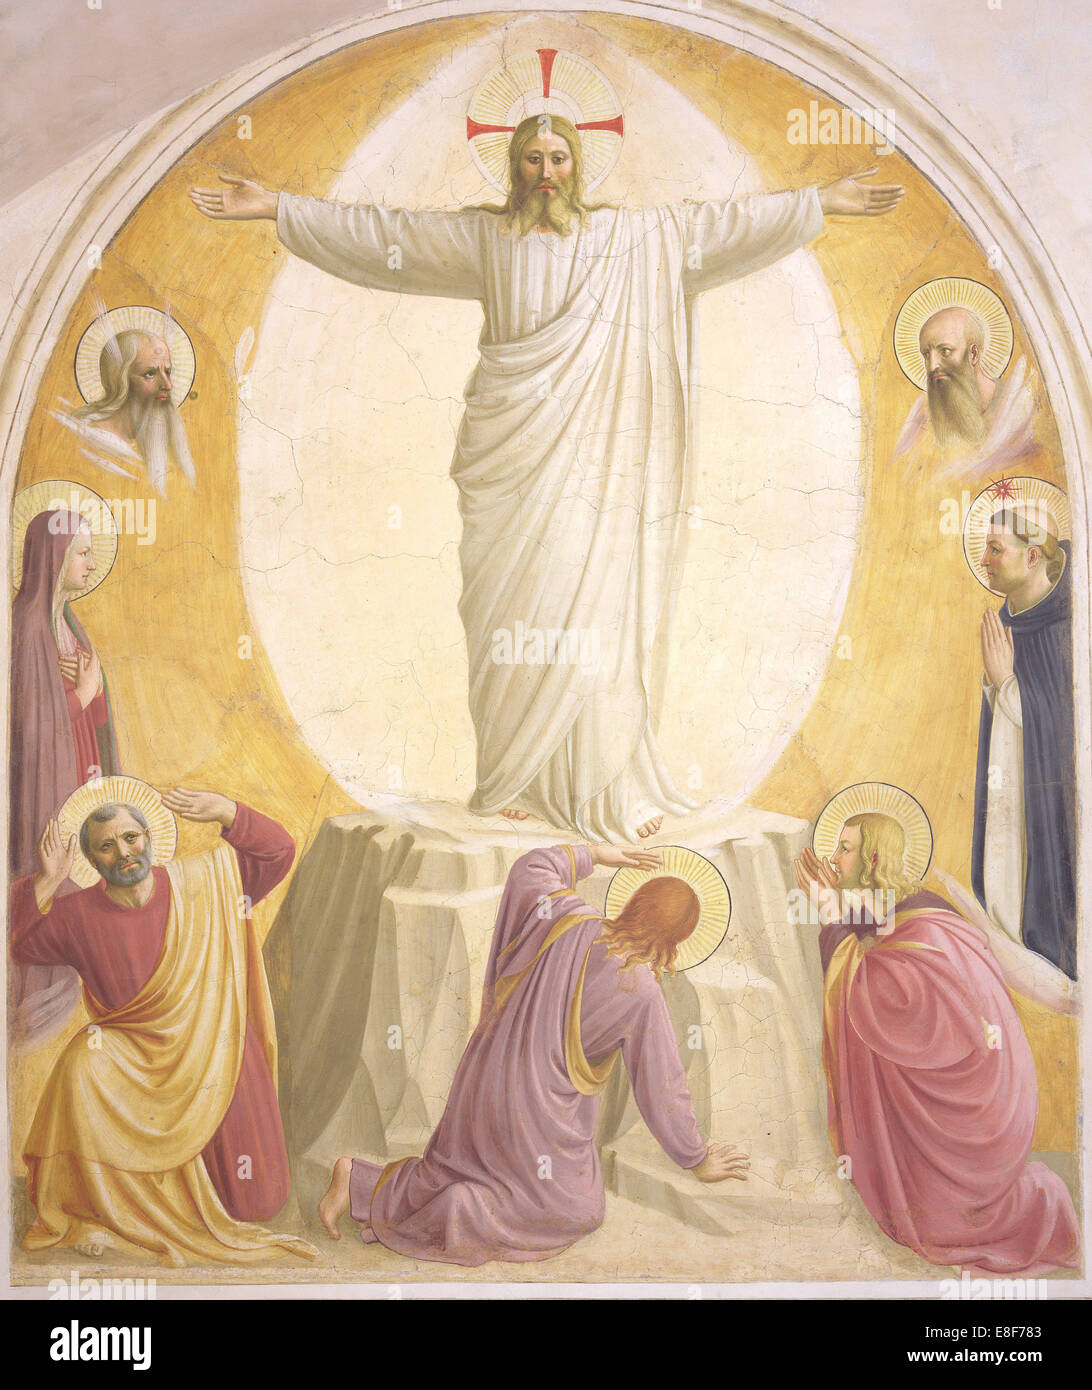 La Transfiguración de Jesús. Artista: Angelico, Fra Giovanni da Fiesole (ca. 1400-1455) Foto de stock